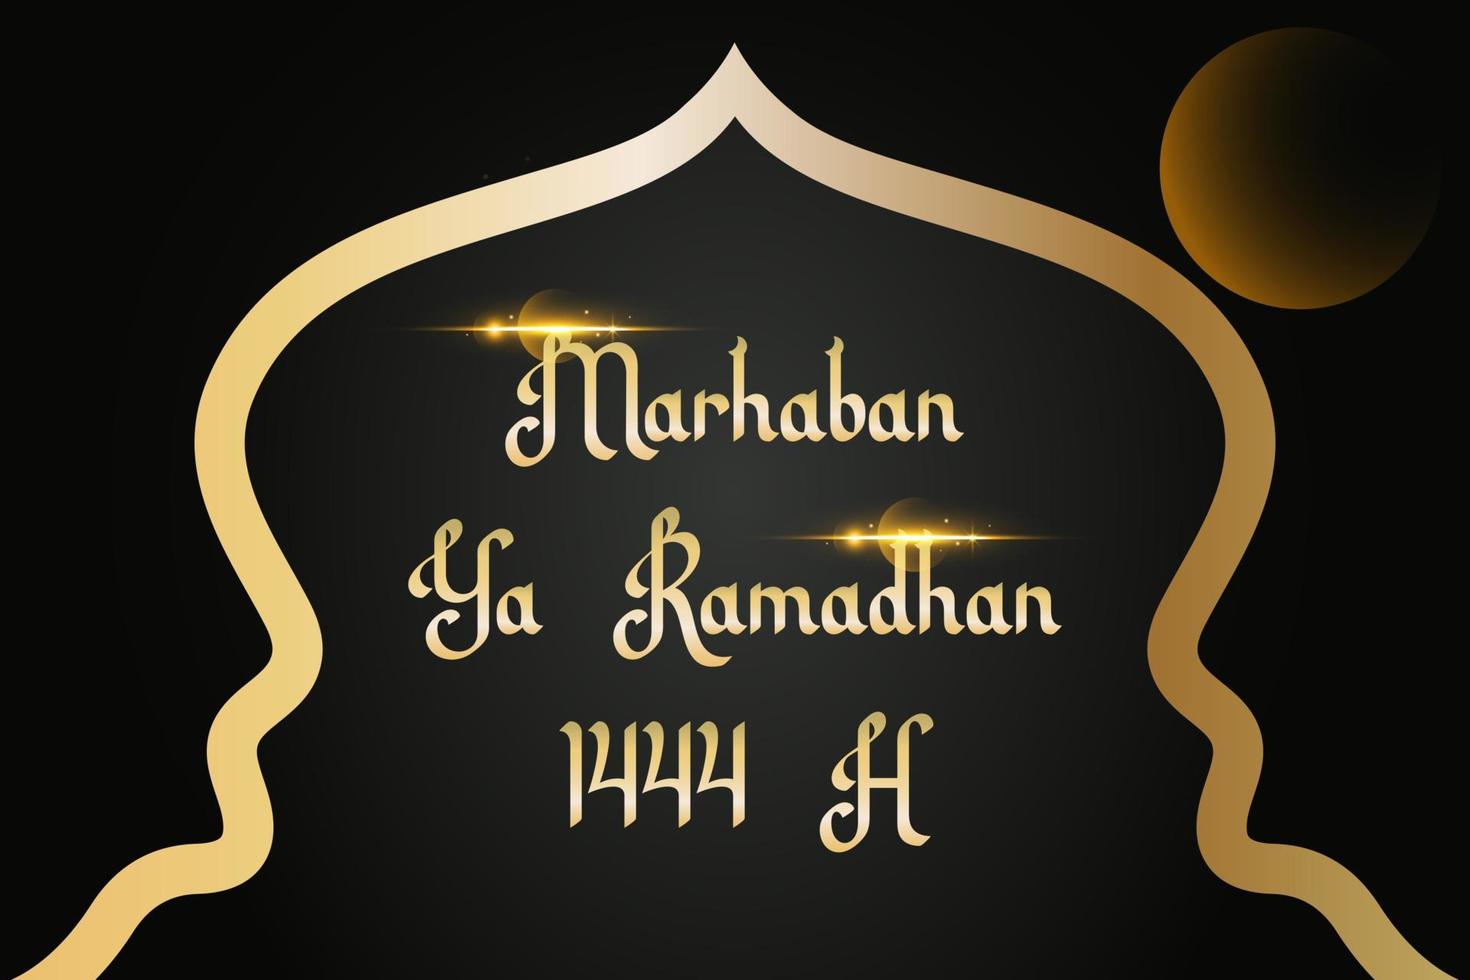 marhaban ya ramadhan 1444 h saludo con mano letras caligrafía y ilustración. . islámico saludo antecedentes lata utilizar para eid Mubarak vector